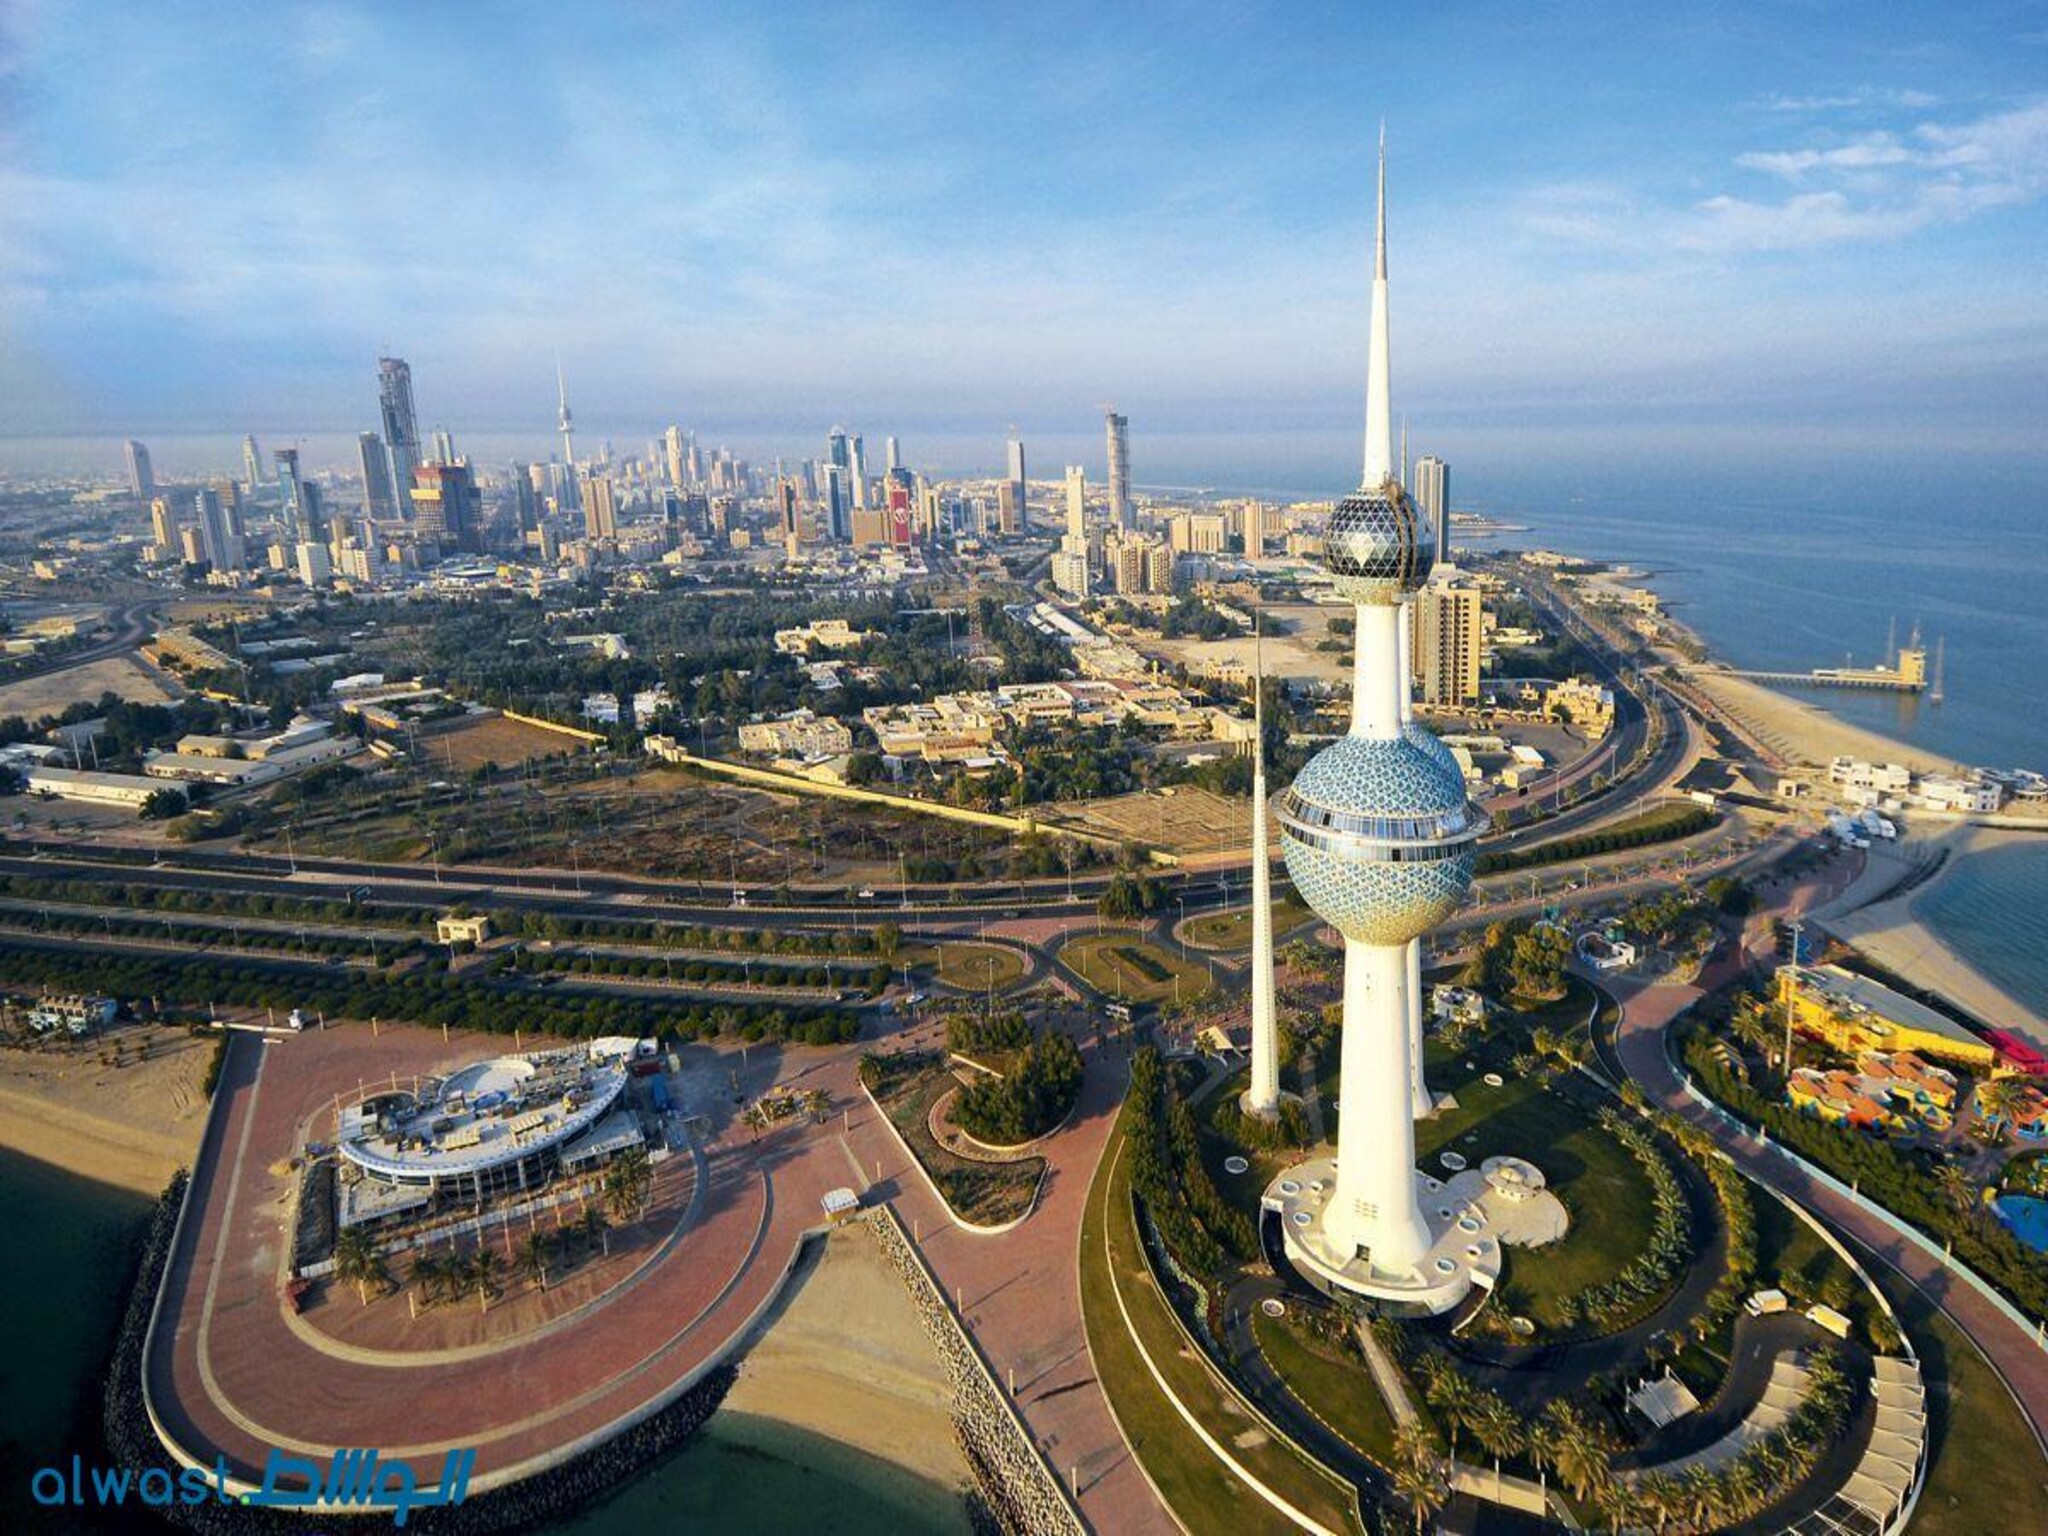 Kuwait Wealth Fund London Unit Soars to $250 Billion in Assets